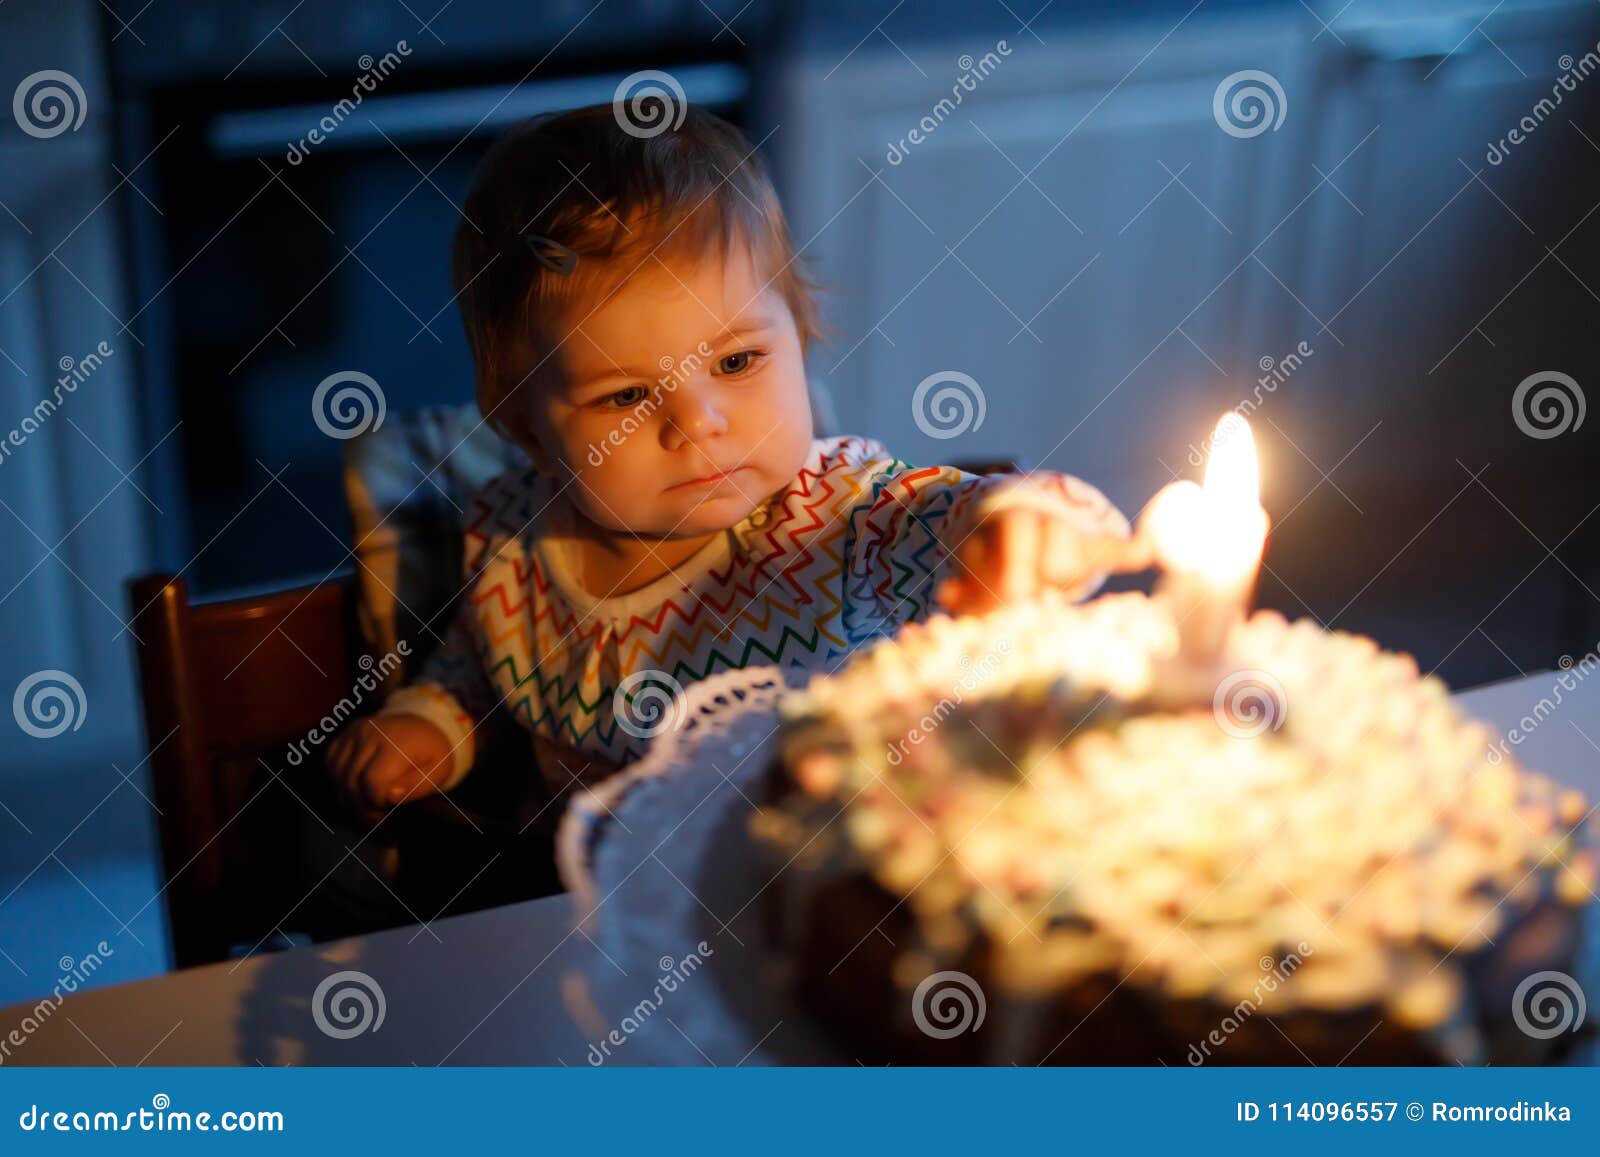 Birthday Little Girl Homemade Cake For